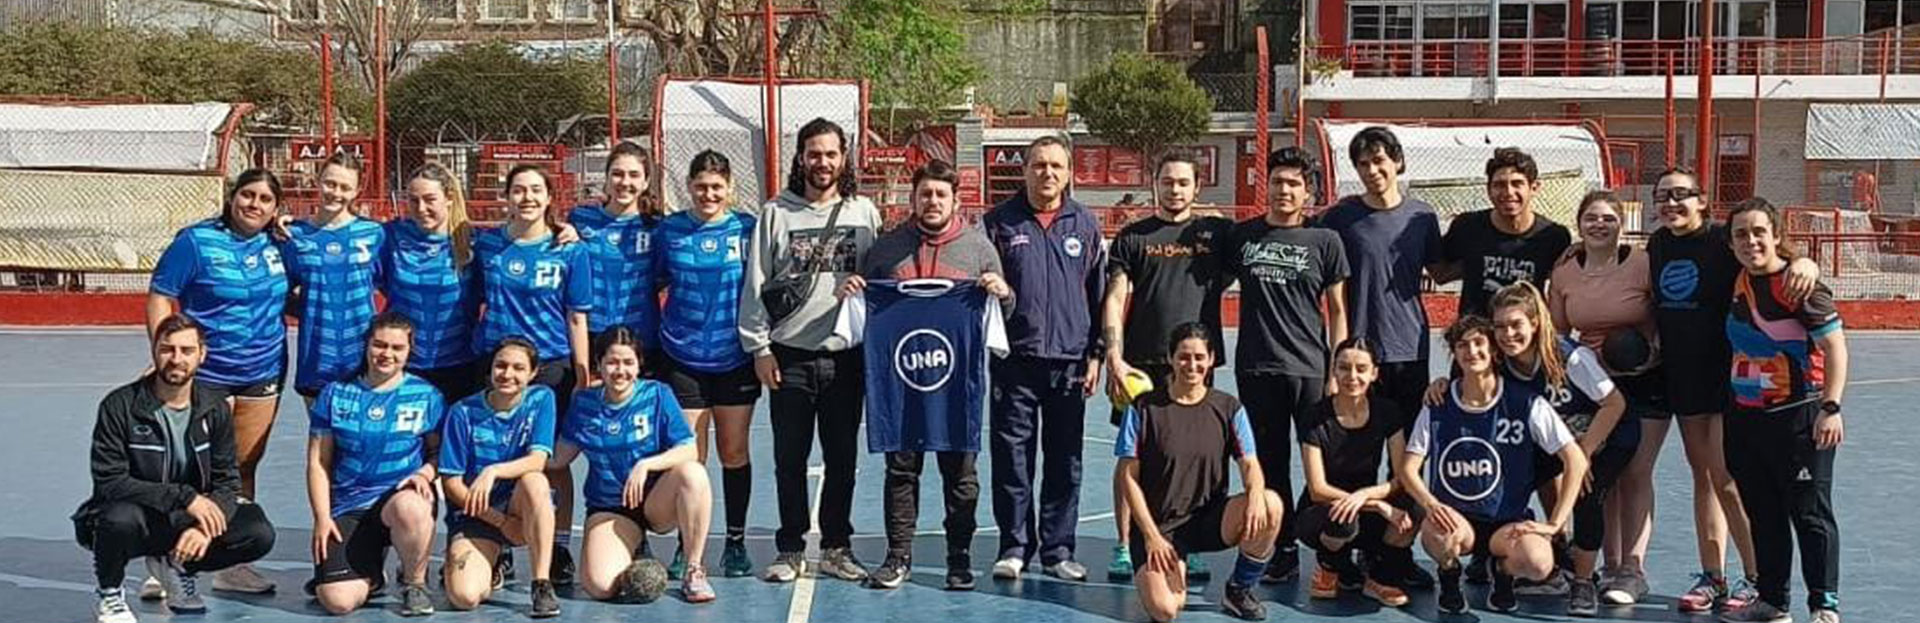 Actividades deportivas de la UNA en el Club Argentino Juniors